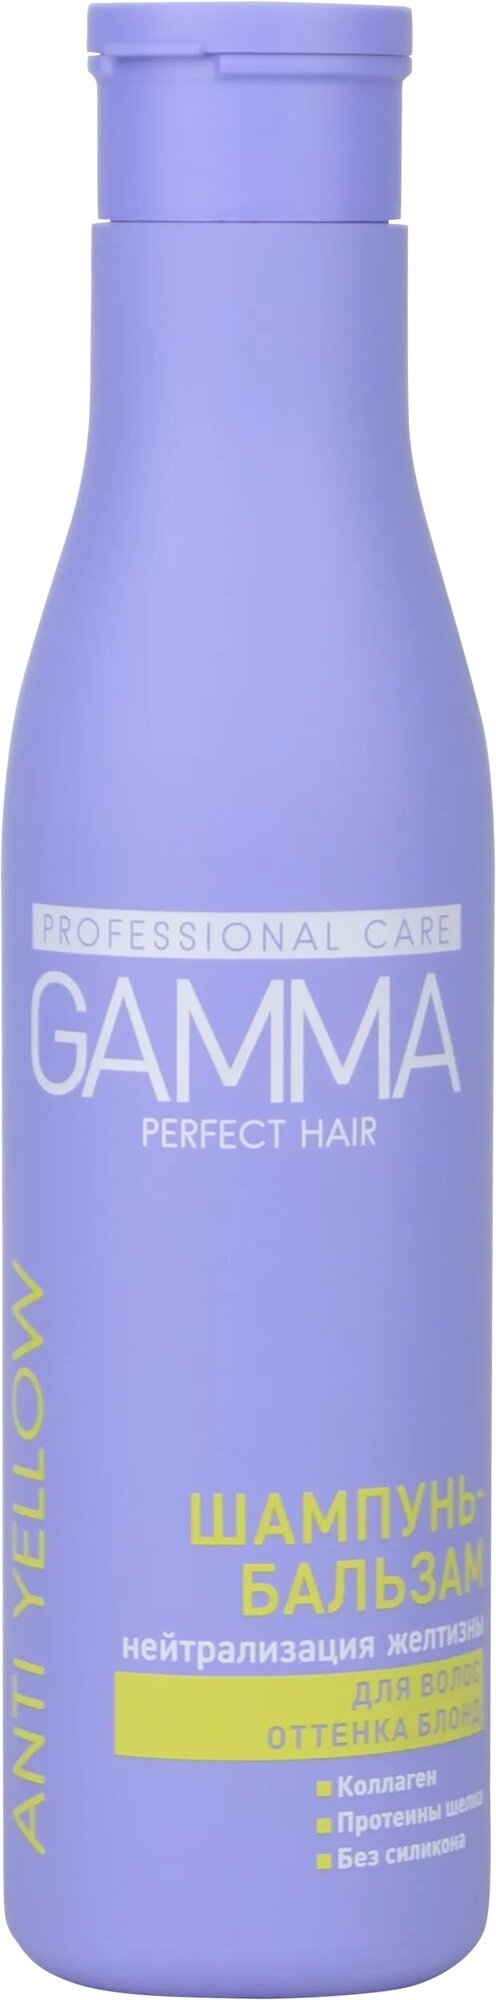 Шампунь для волос Gamma Perfect Hair Защита цвета и блеск 350мл Свобода - фото №6